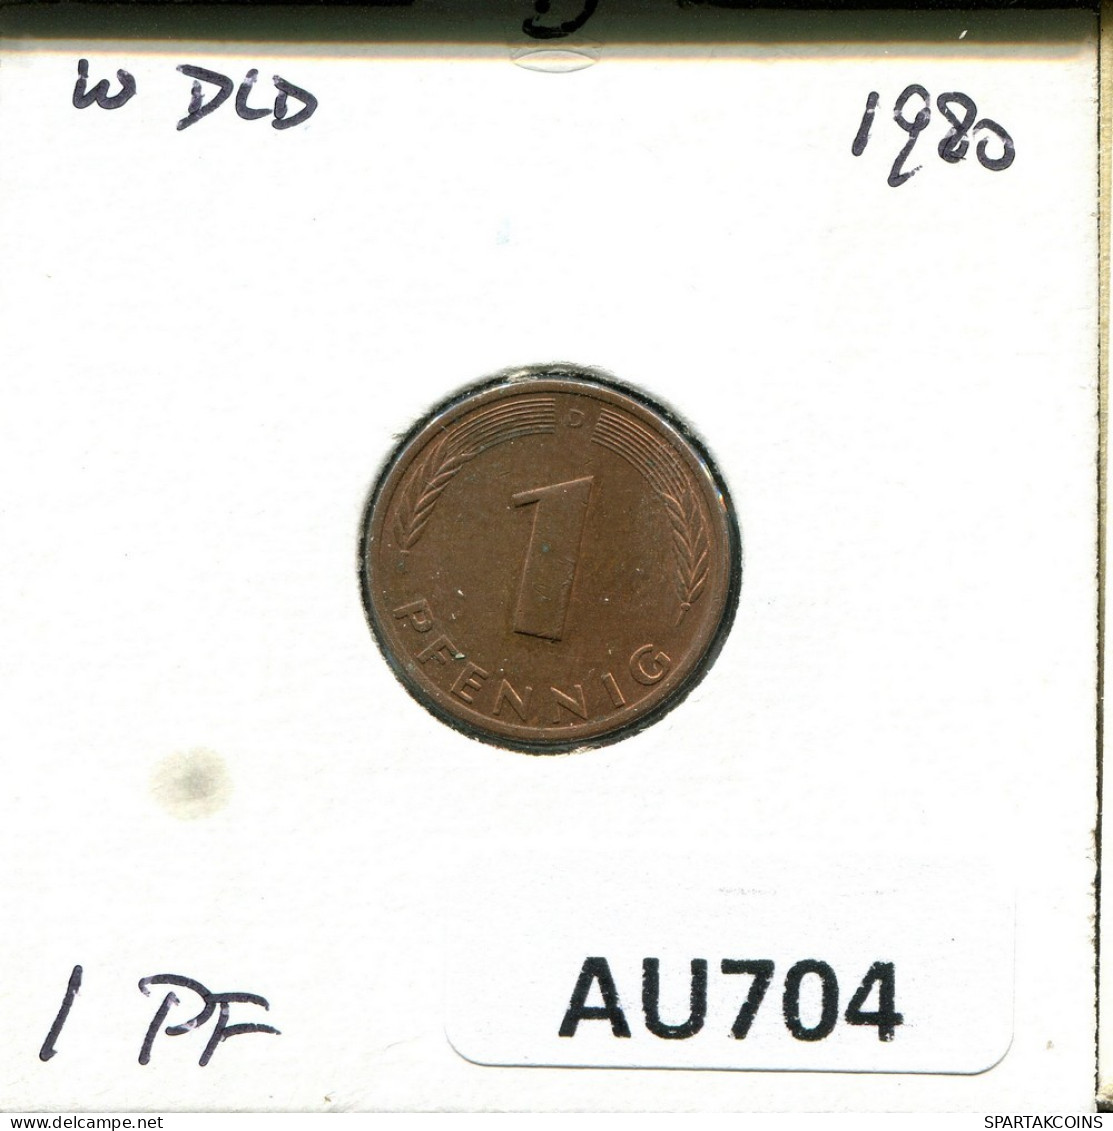 1 PFENNIG 1980 D BRD ALEMANIA Moneda GERMANY #AU704.E.A - 1 Pfennig